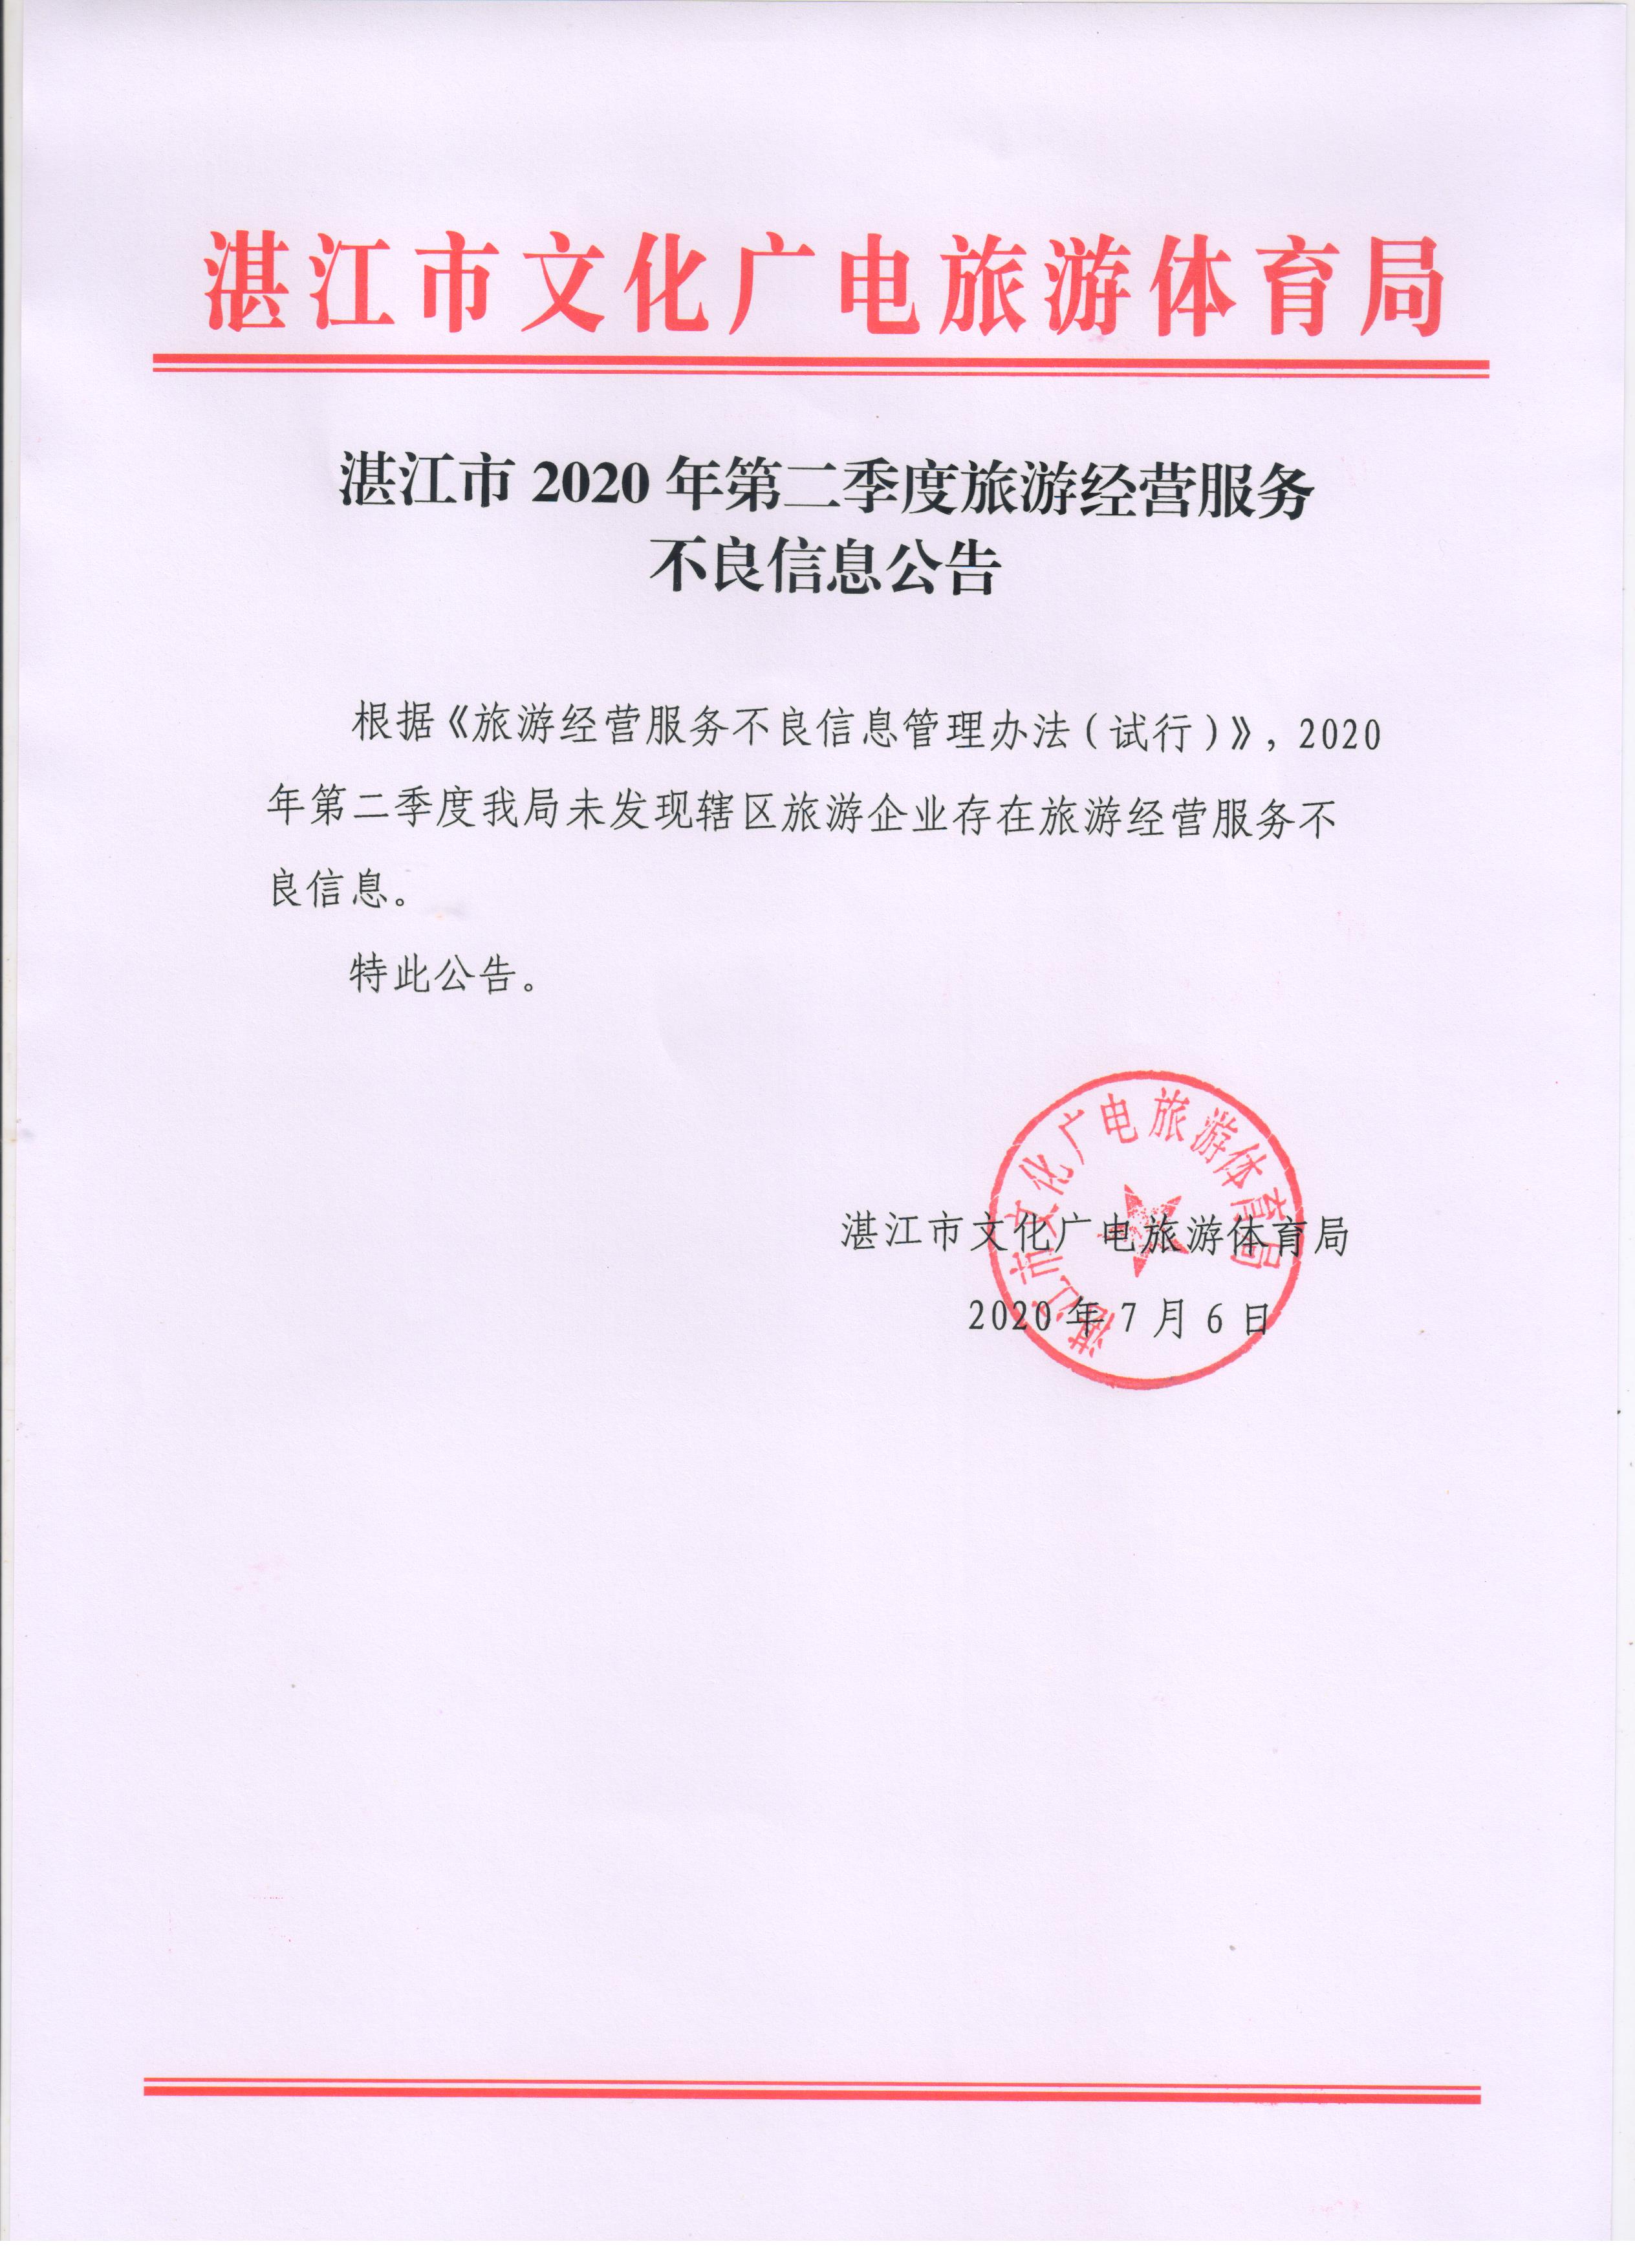 湛江市2020年第二季度旅游经营服务不良信息公告.jpg